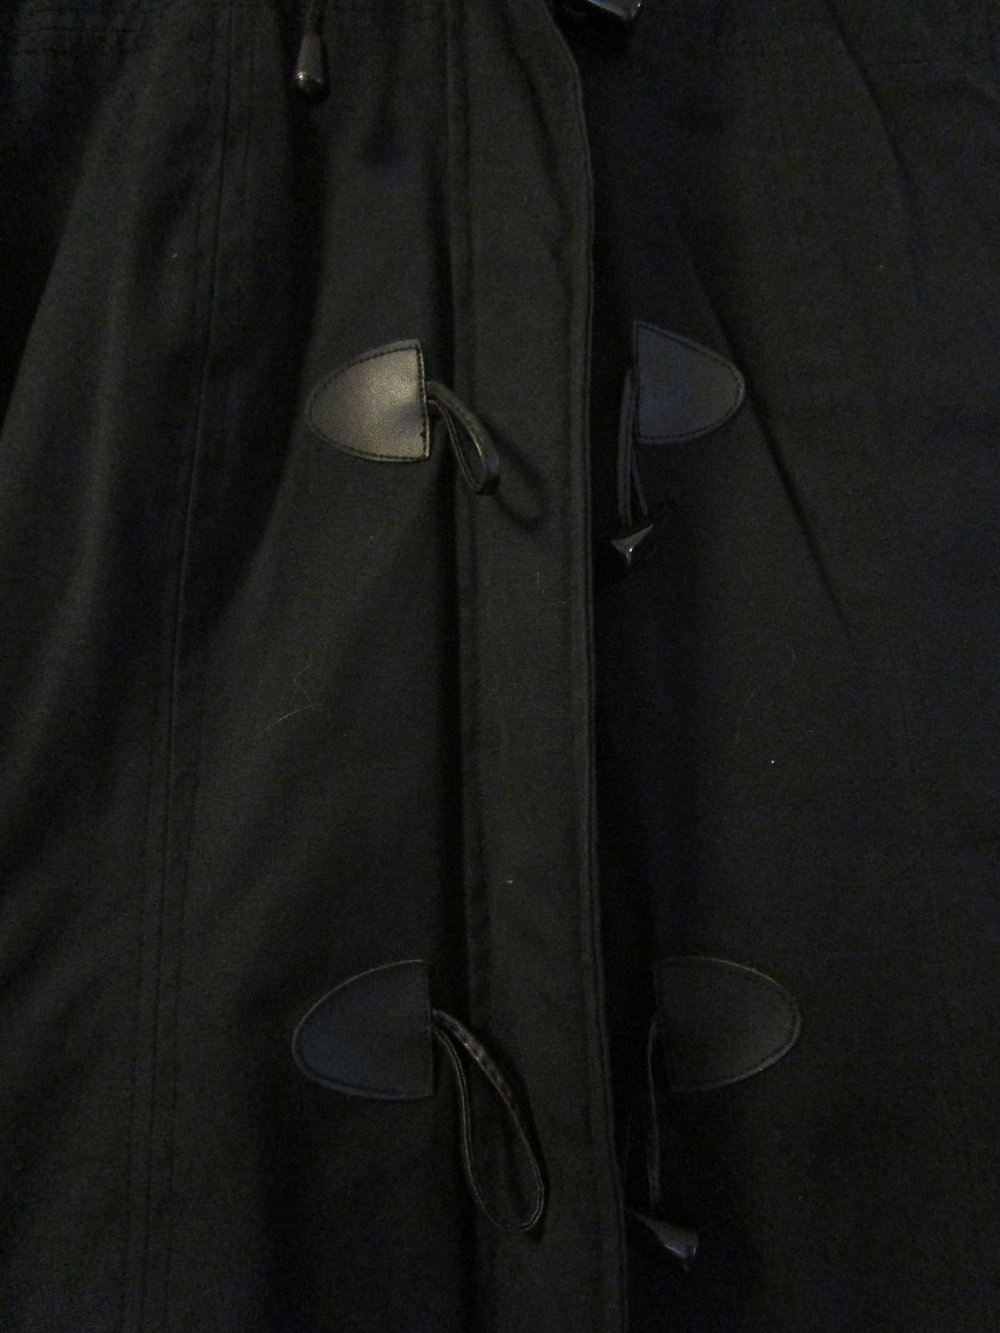 Wintermantel von der Marke Flashlights, schwarz, Größe 36